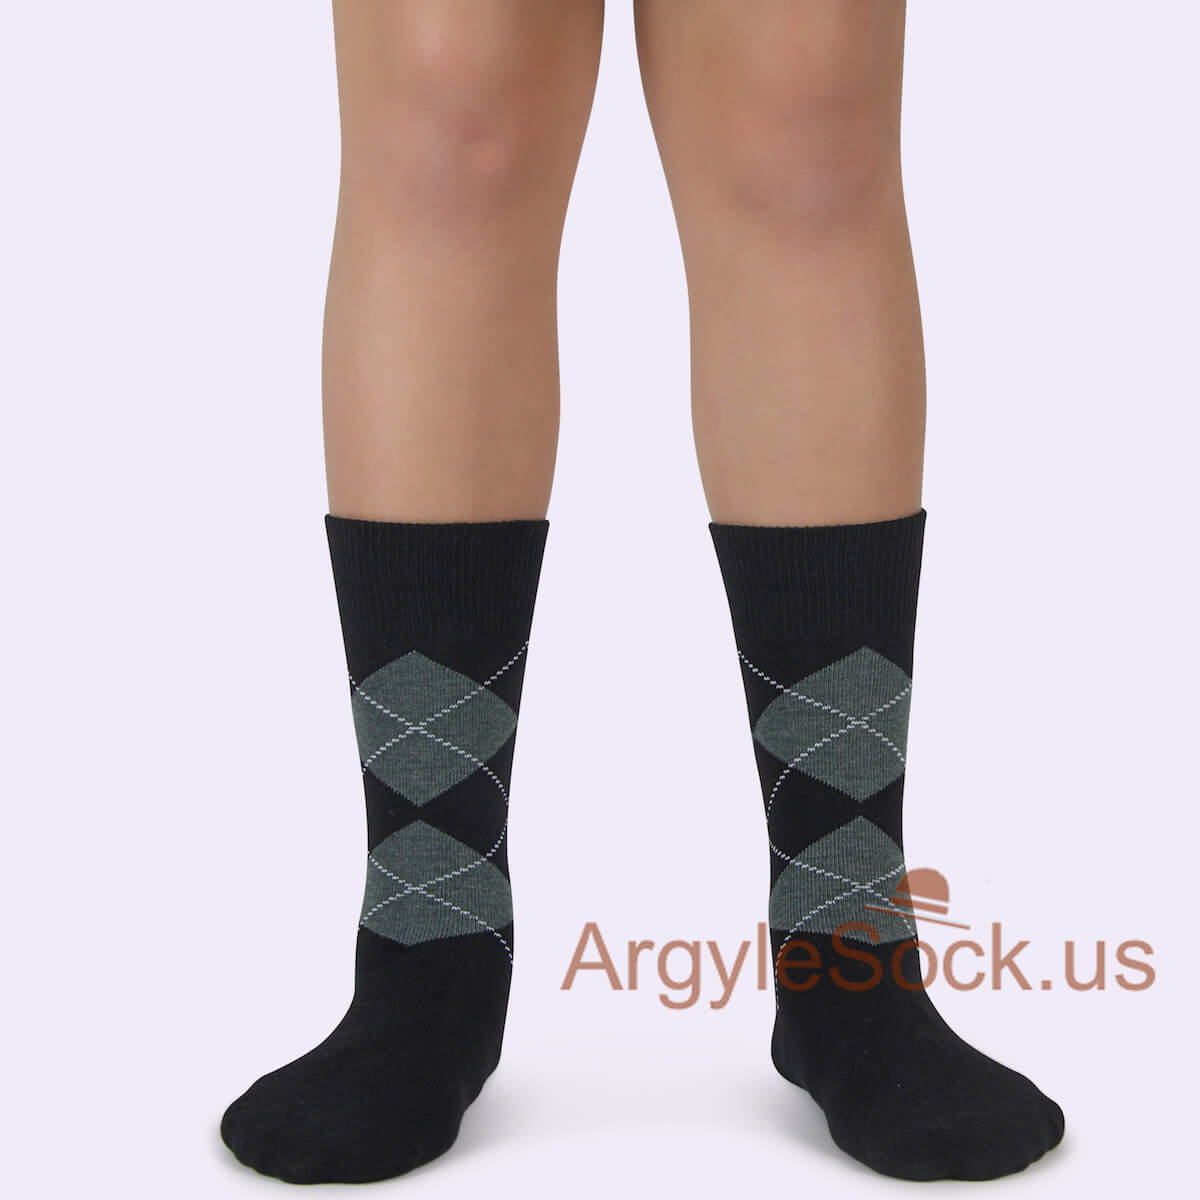 Black Grey Argyle Junior Groomsmen/Ring Bearer/Costume Socks